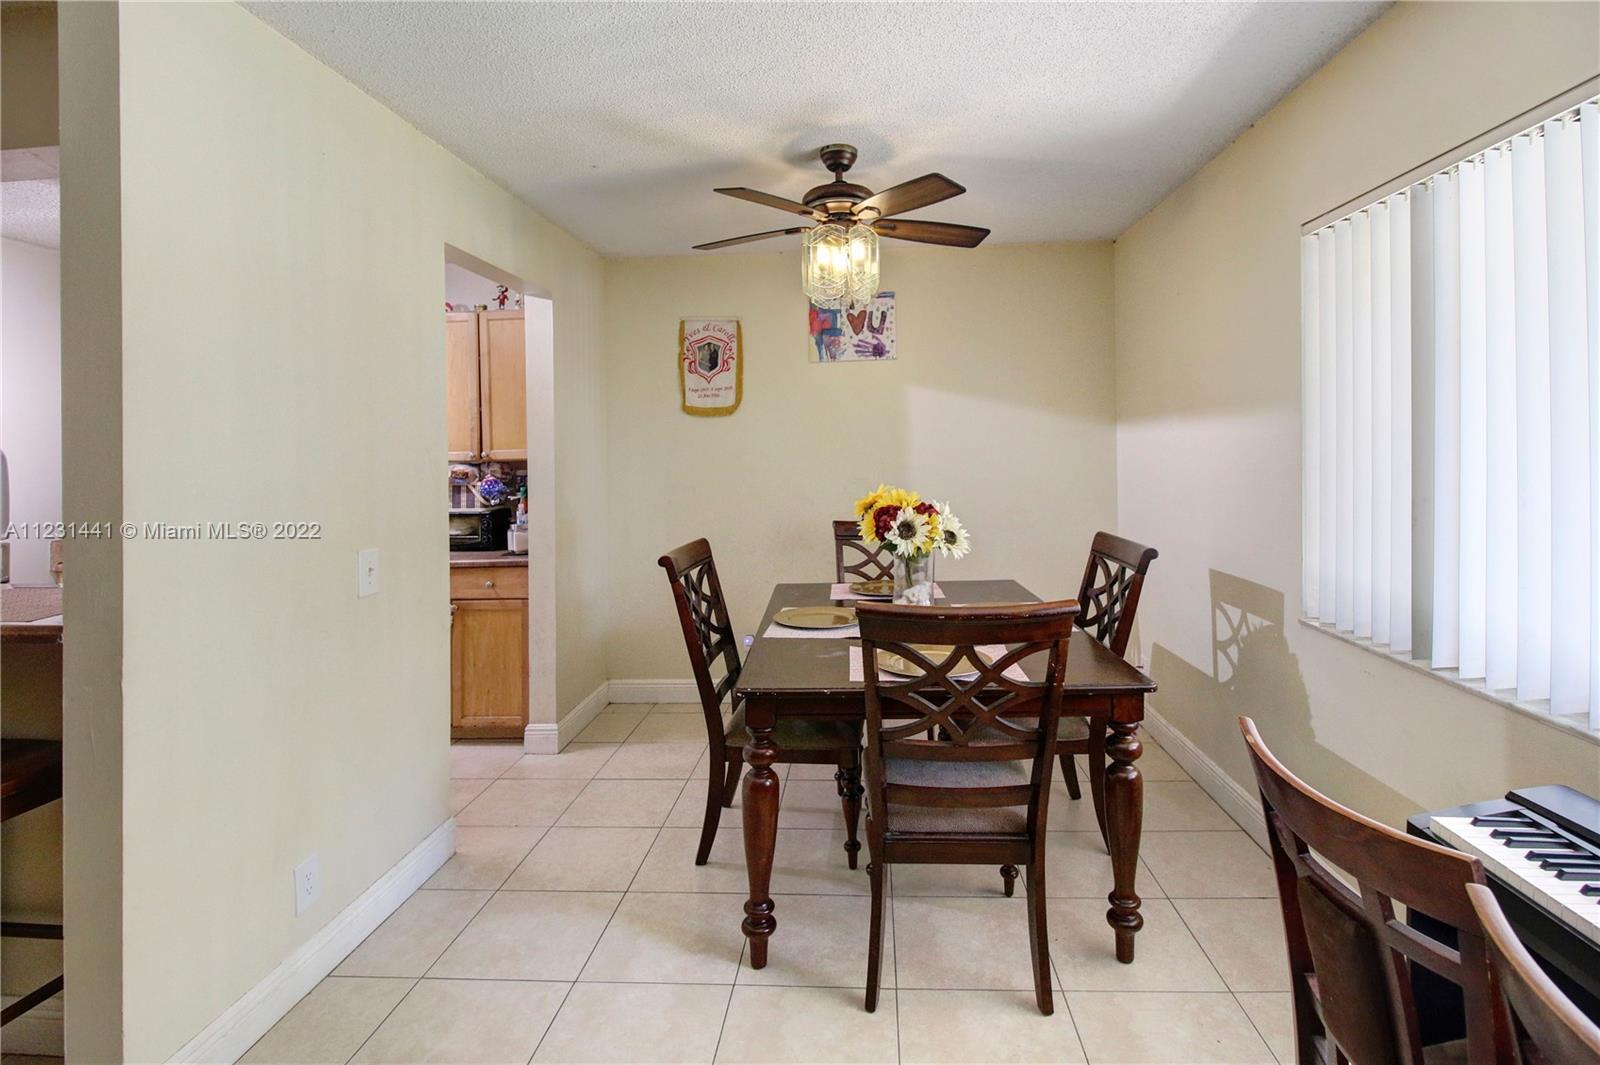 Property for Sale at 812 Meadows Cir Cir 812, Boynton Beach, Palm Beach County, Florida - Bedrooms: 2 
Bathrooms: 2  - $225,000